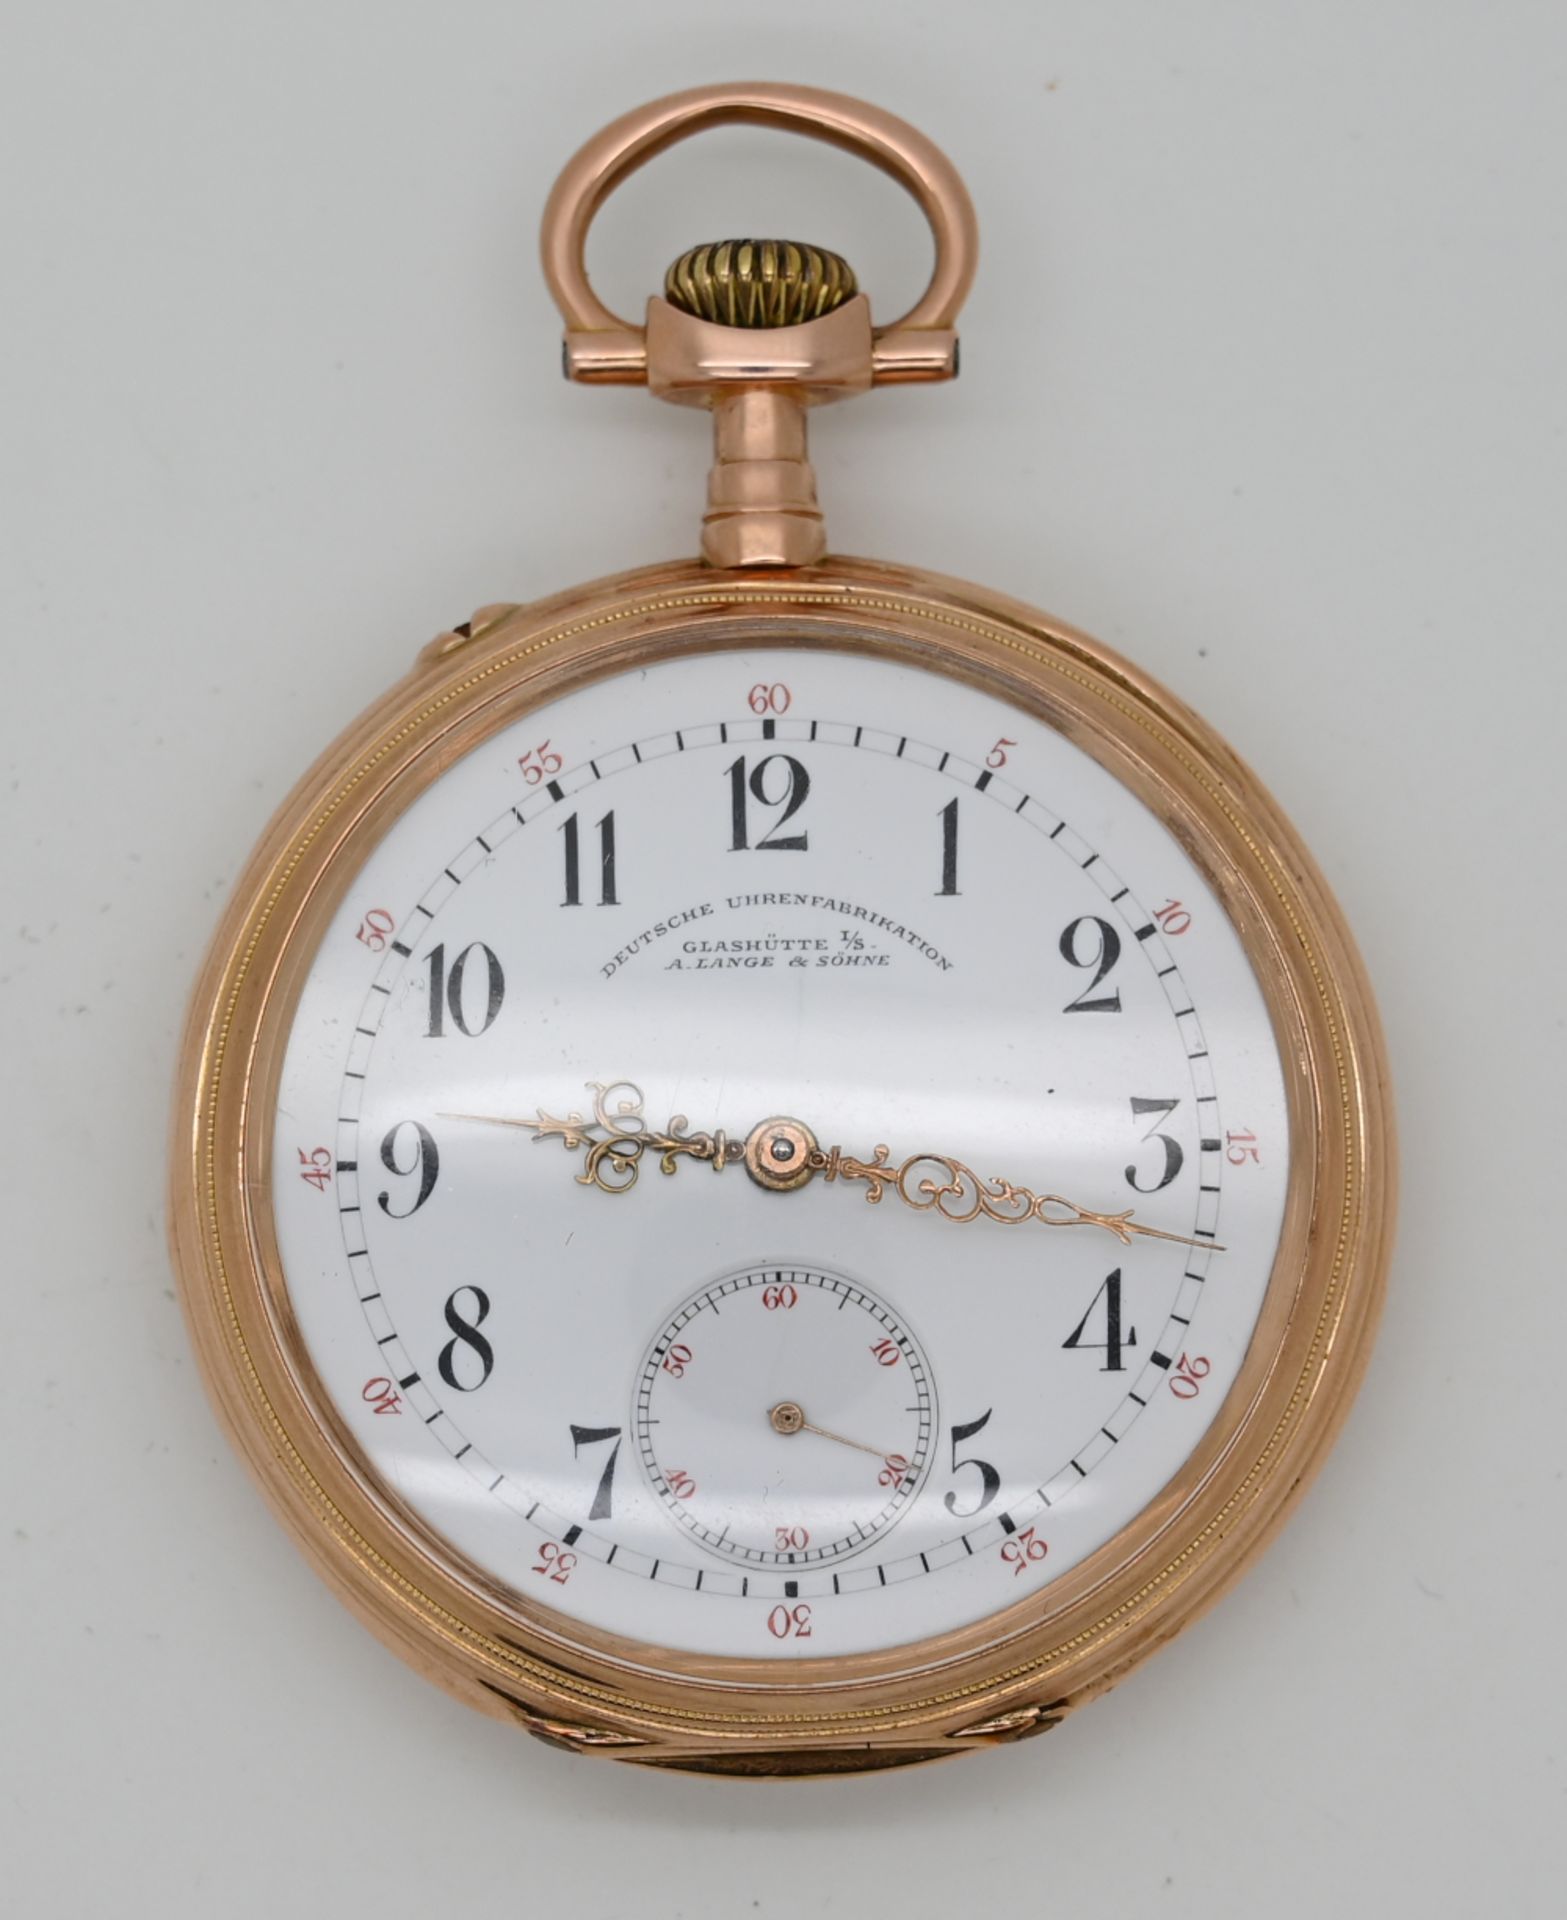 1 Herrentaschenuhr GLASHÜTTE, A. LANGE & SÖHNE Deutsche Uhrenfabrikation, GG 14ct.,